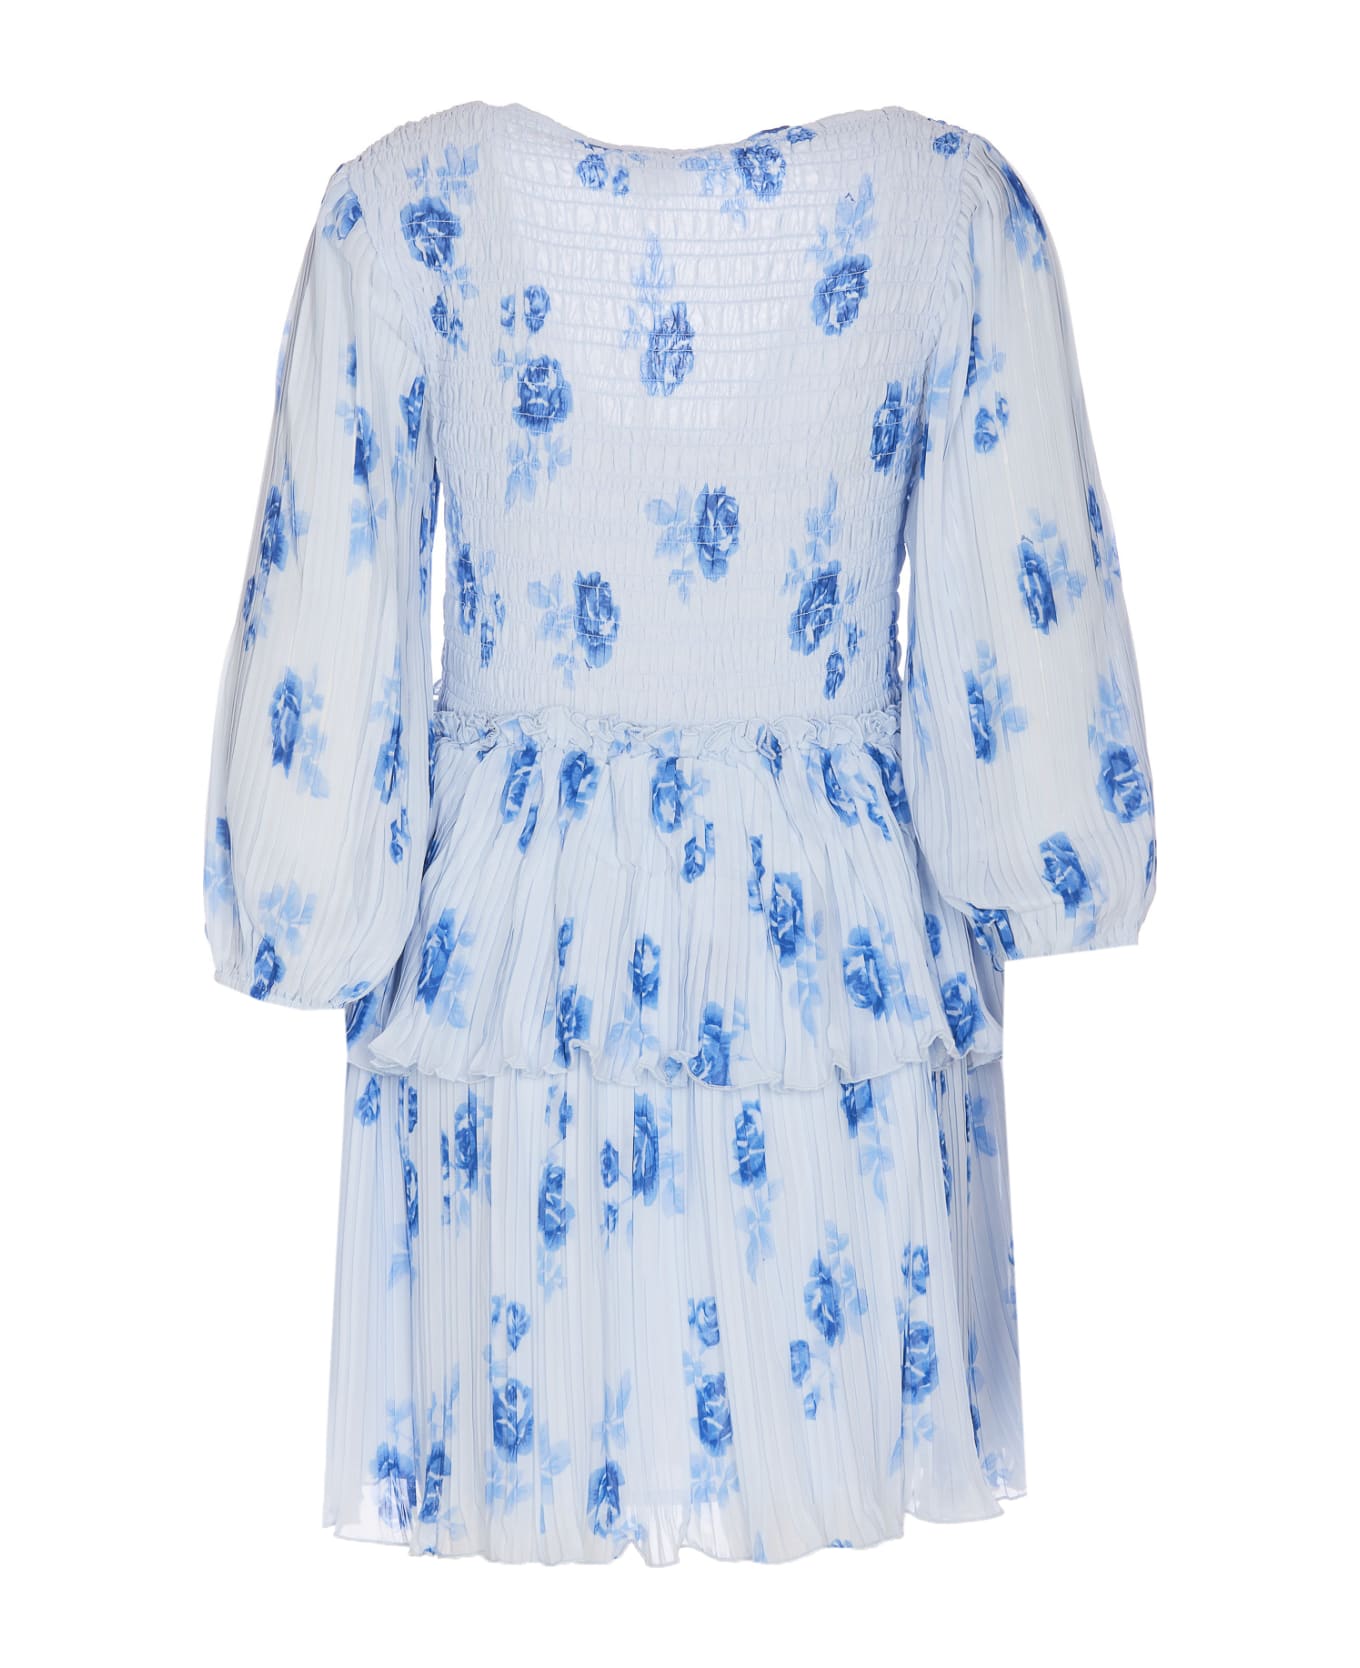 Ganni Pleated Georgette Flounce Smock Mini Dress - Blue